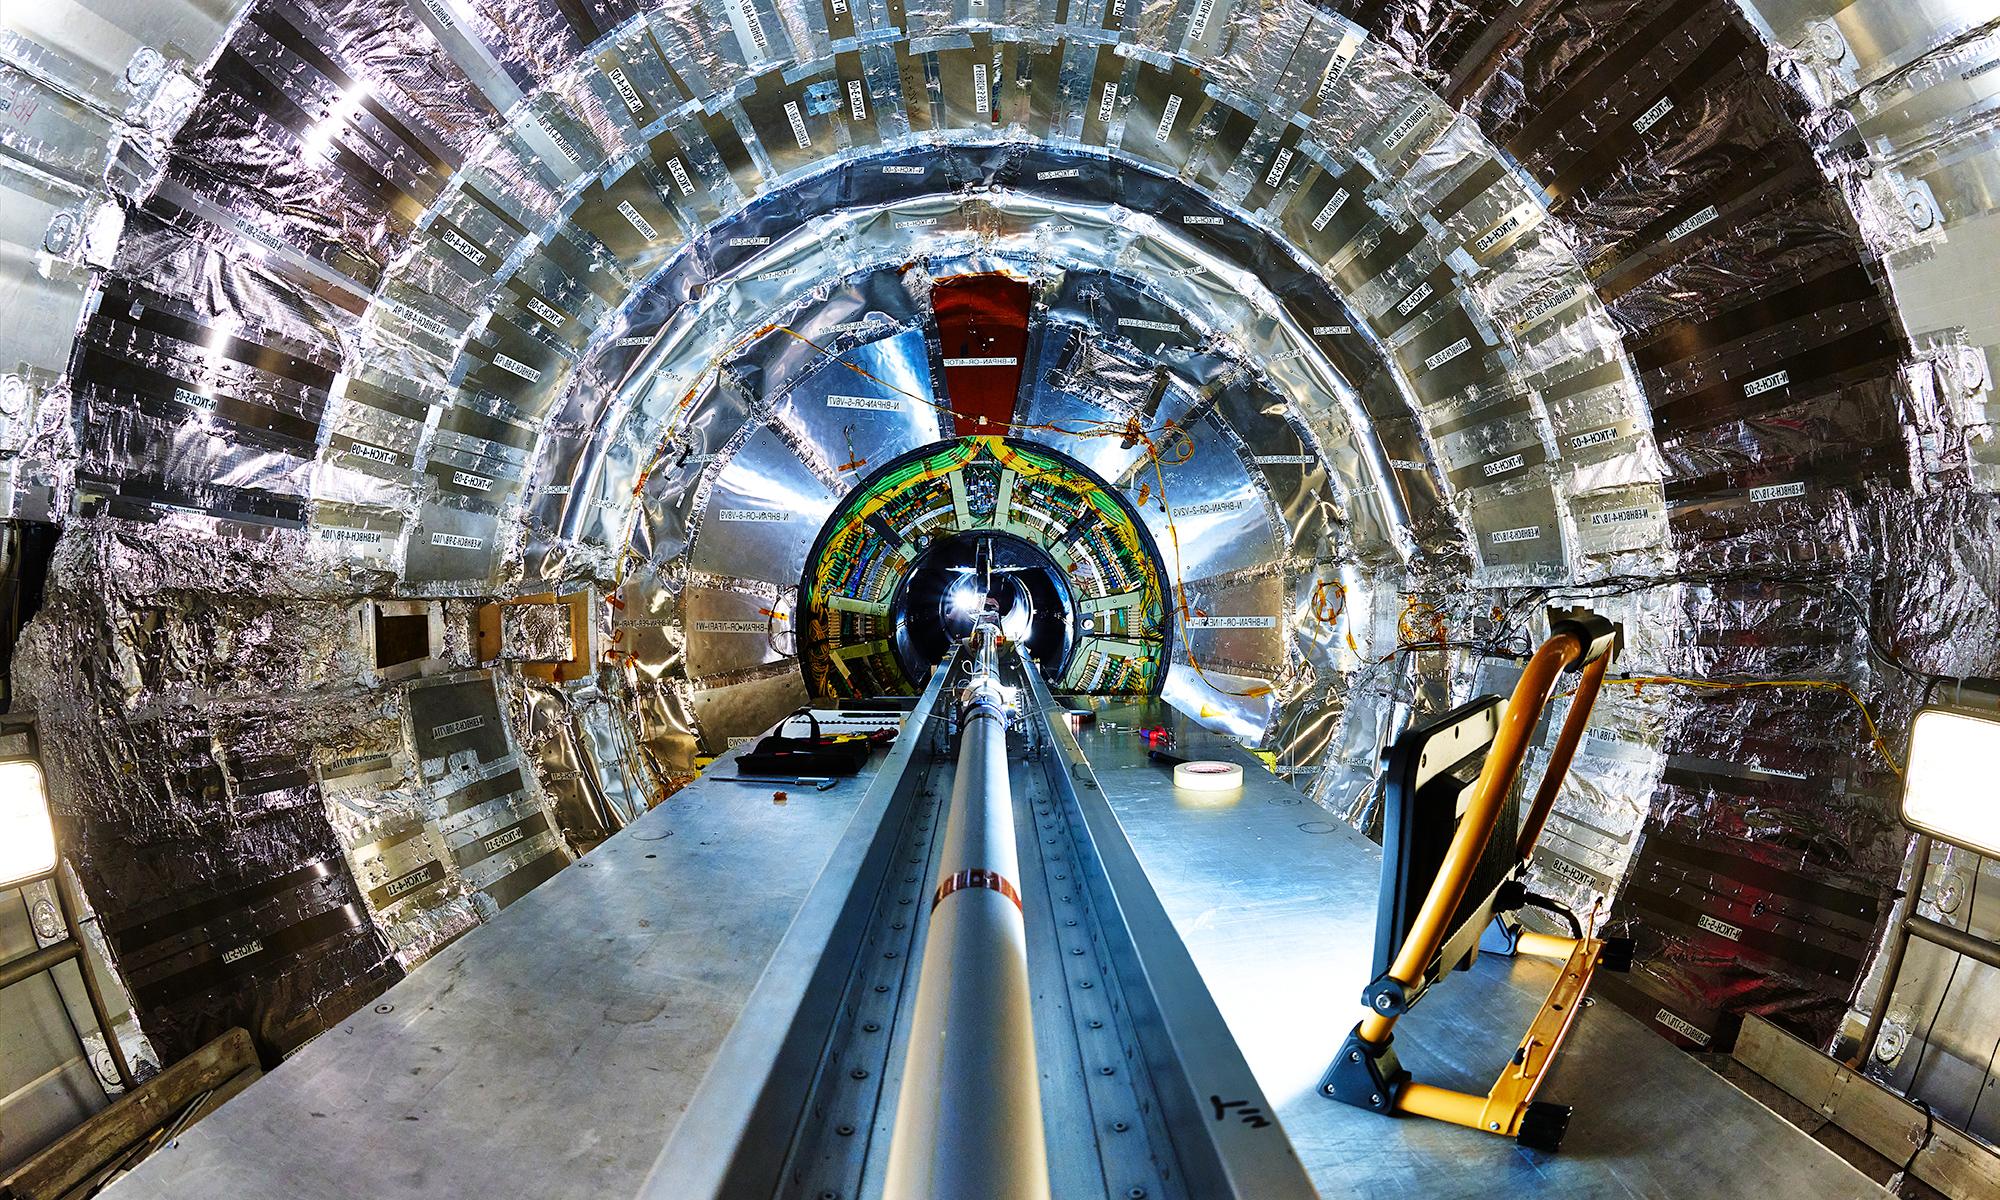 欧洲核子澳门威尼斯人网上赌场中心的CMS探测器内部, 显示了一个巨大的中央光束管，周围是一个银色的圆柱形探测器.